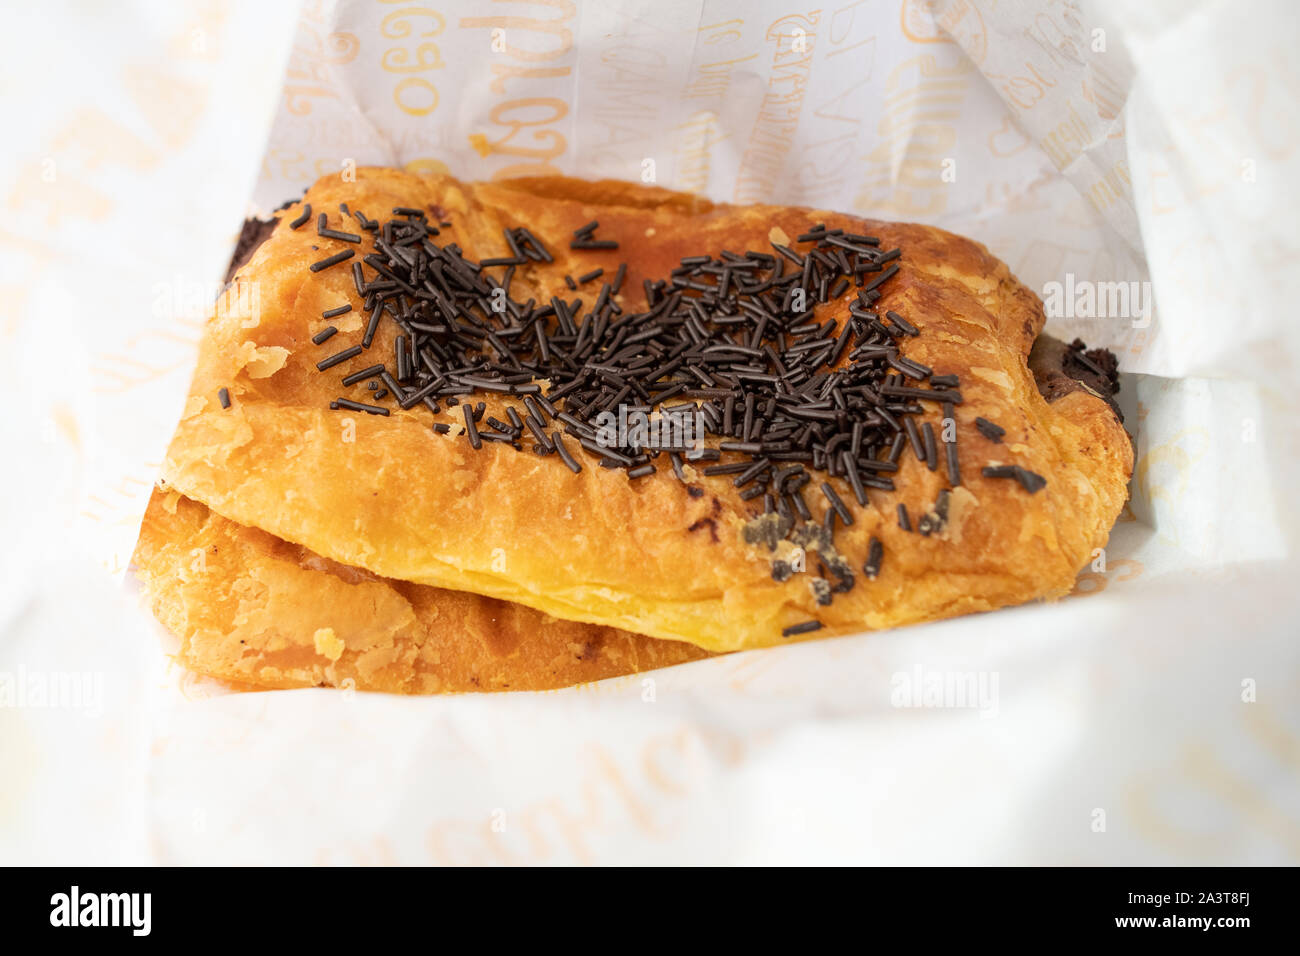 Napolitanas chocolat ou pain au chocolat avec des vermicelles de chocolat en sac de papier - Espagne Banque D'Images